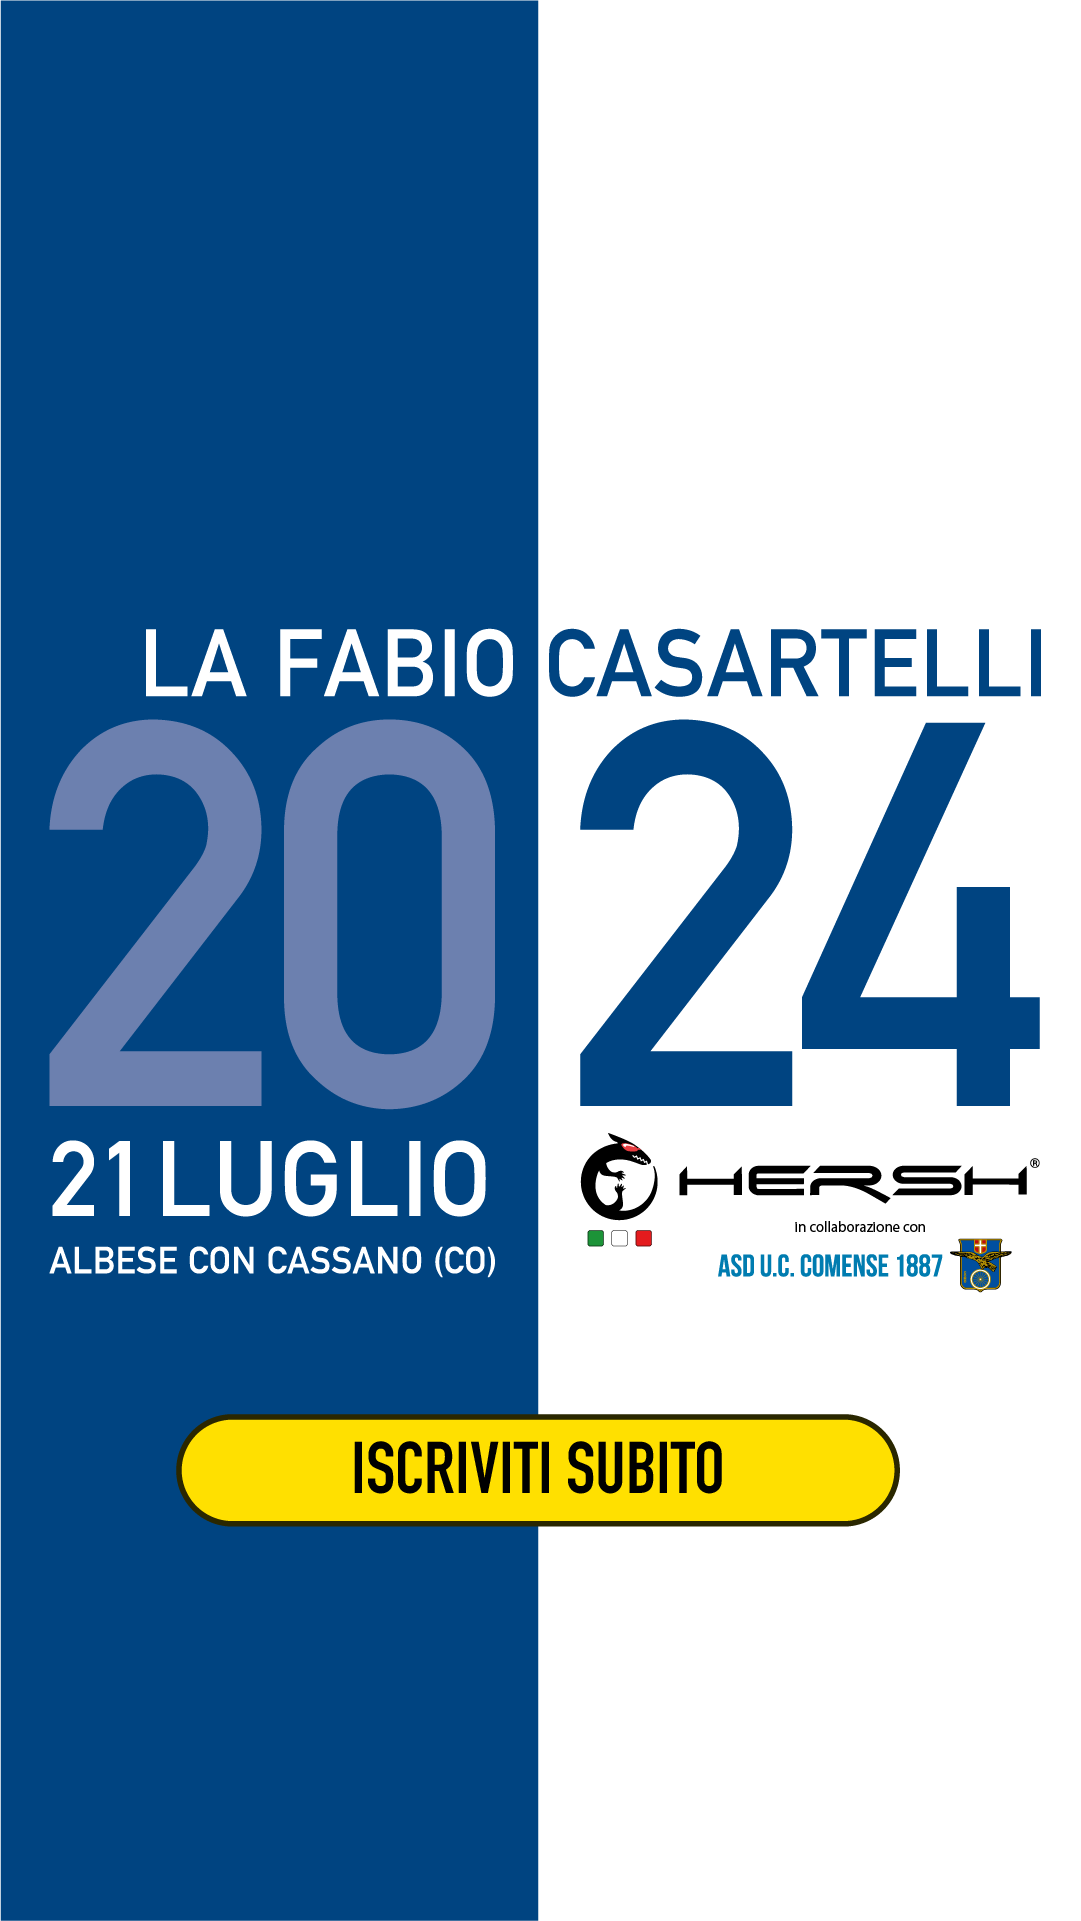 Corsa ciclistica - Fabio Casartelli ad Albese con Cassano (CO)